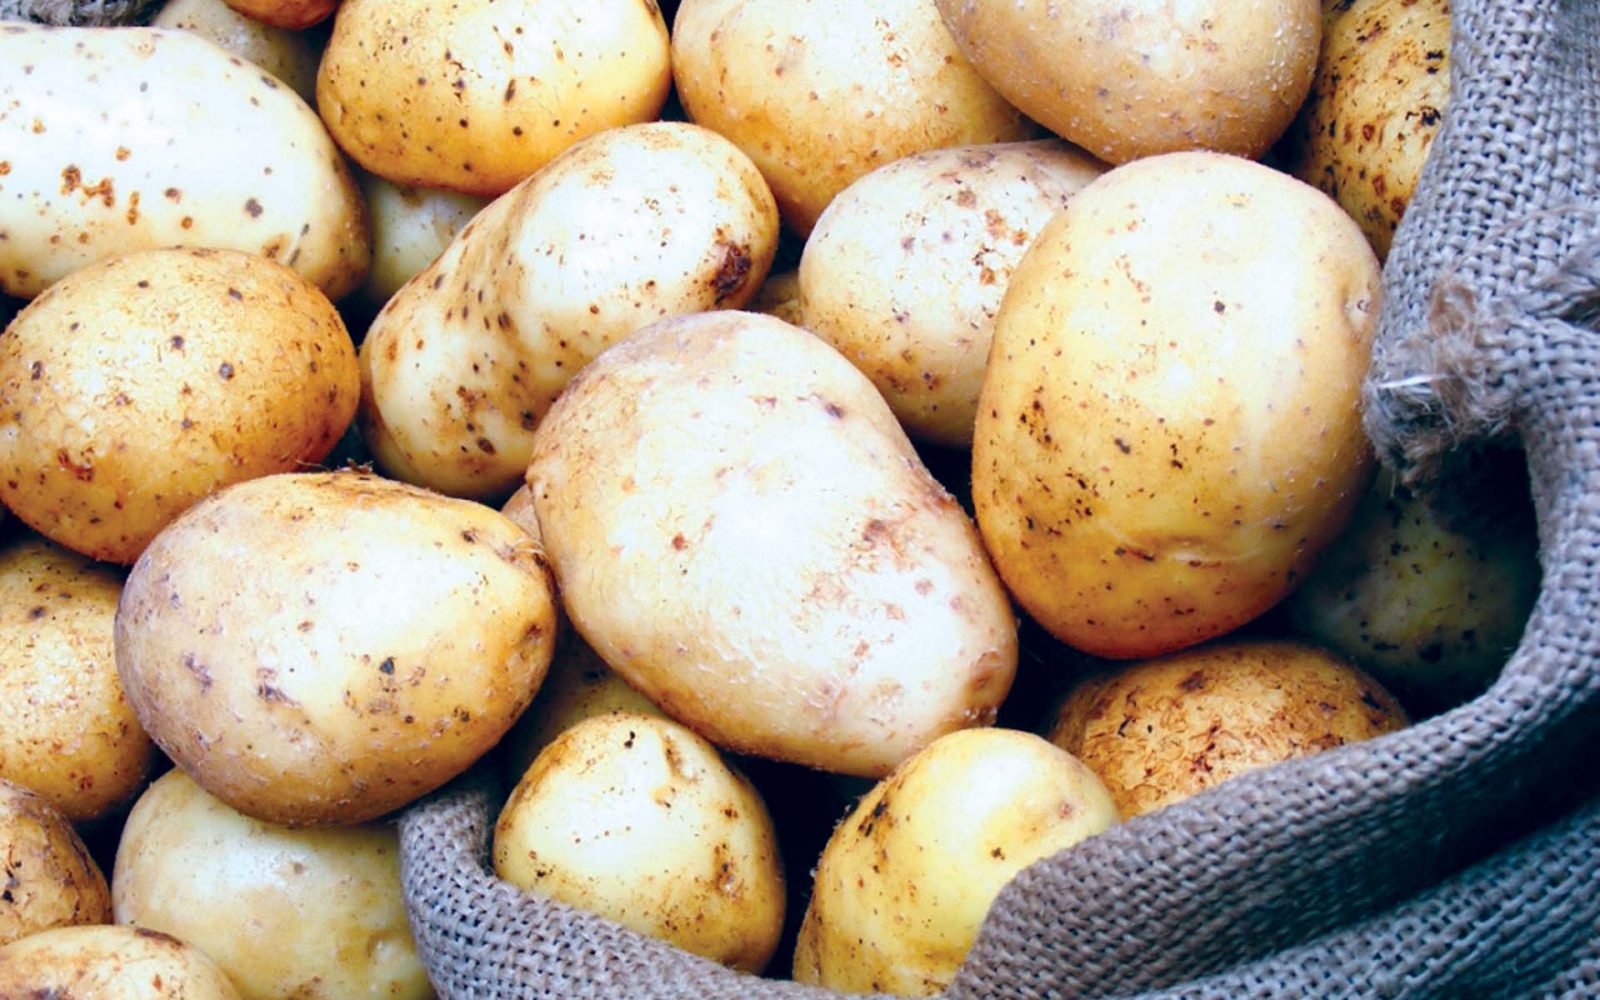 شركات تقاوى البطاطس تستورد 114 ألف طن من أوروبا